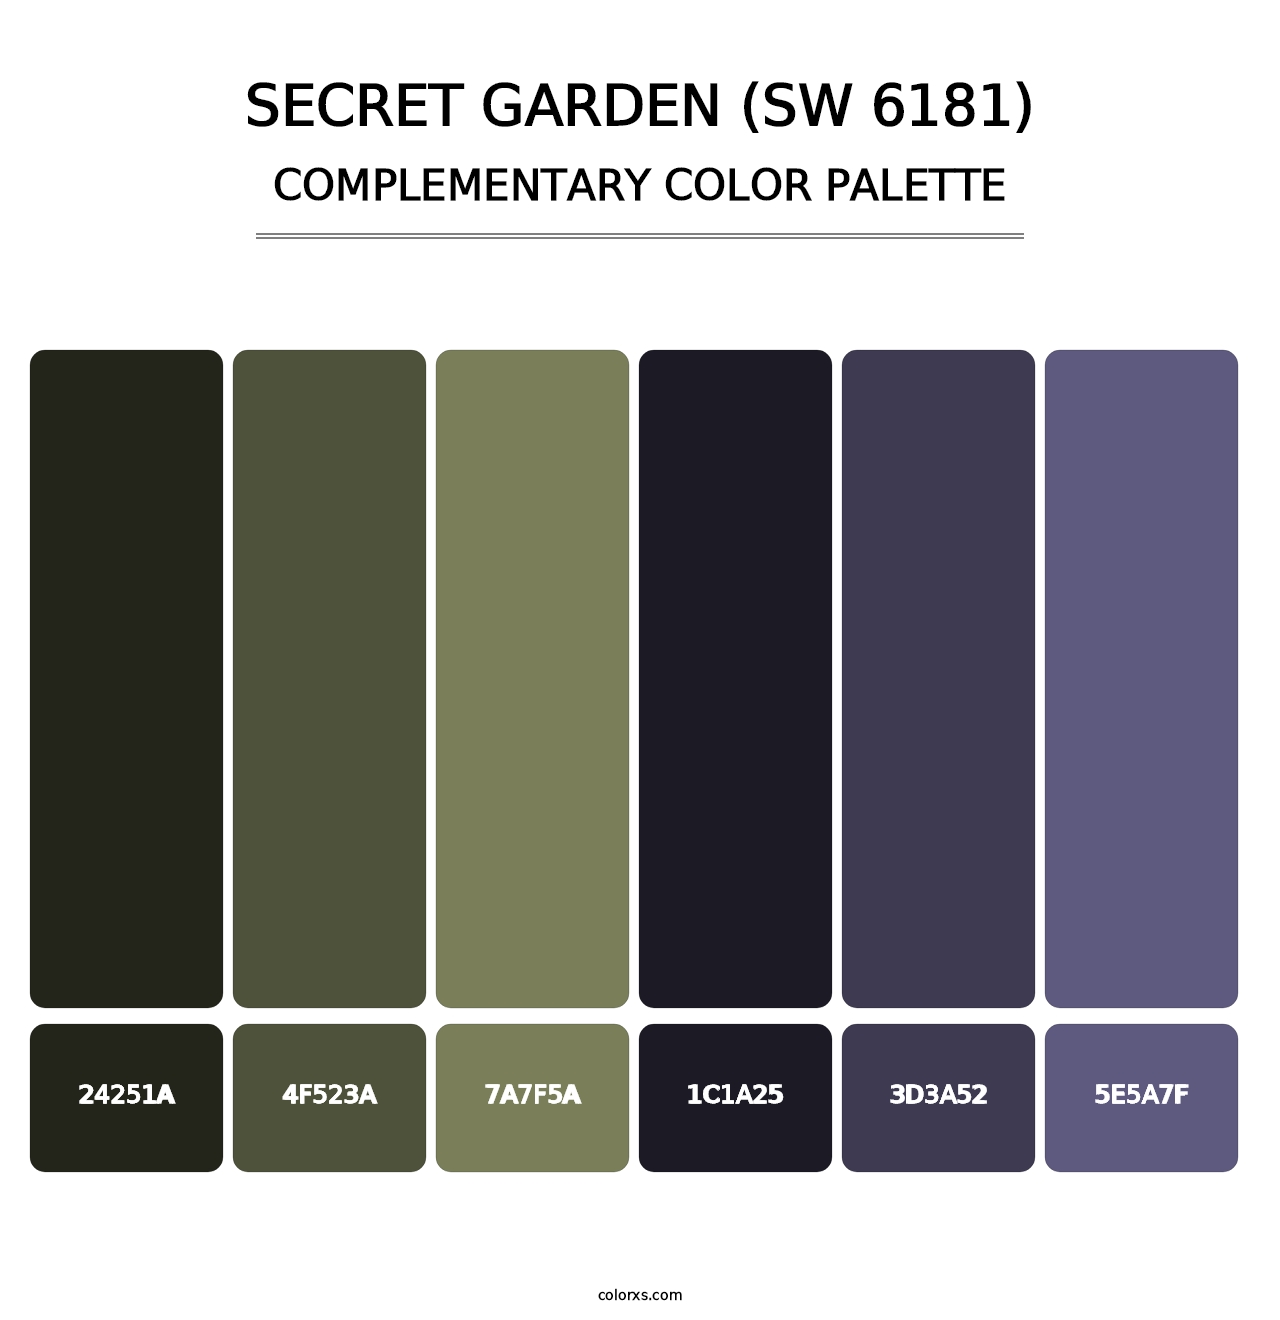 Secret Garden (SW 6181) - Complementary Color Palette